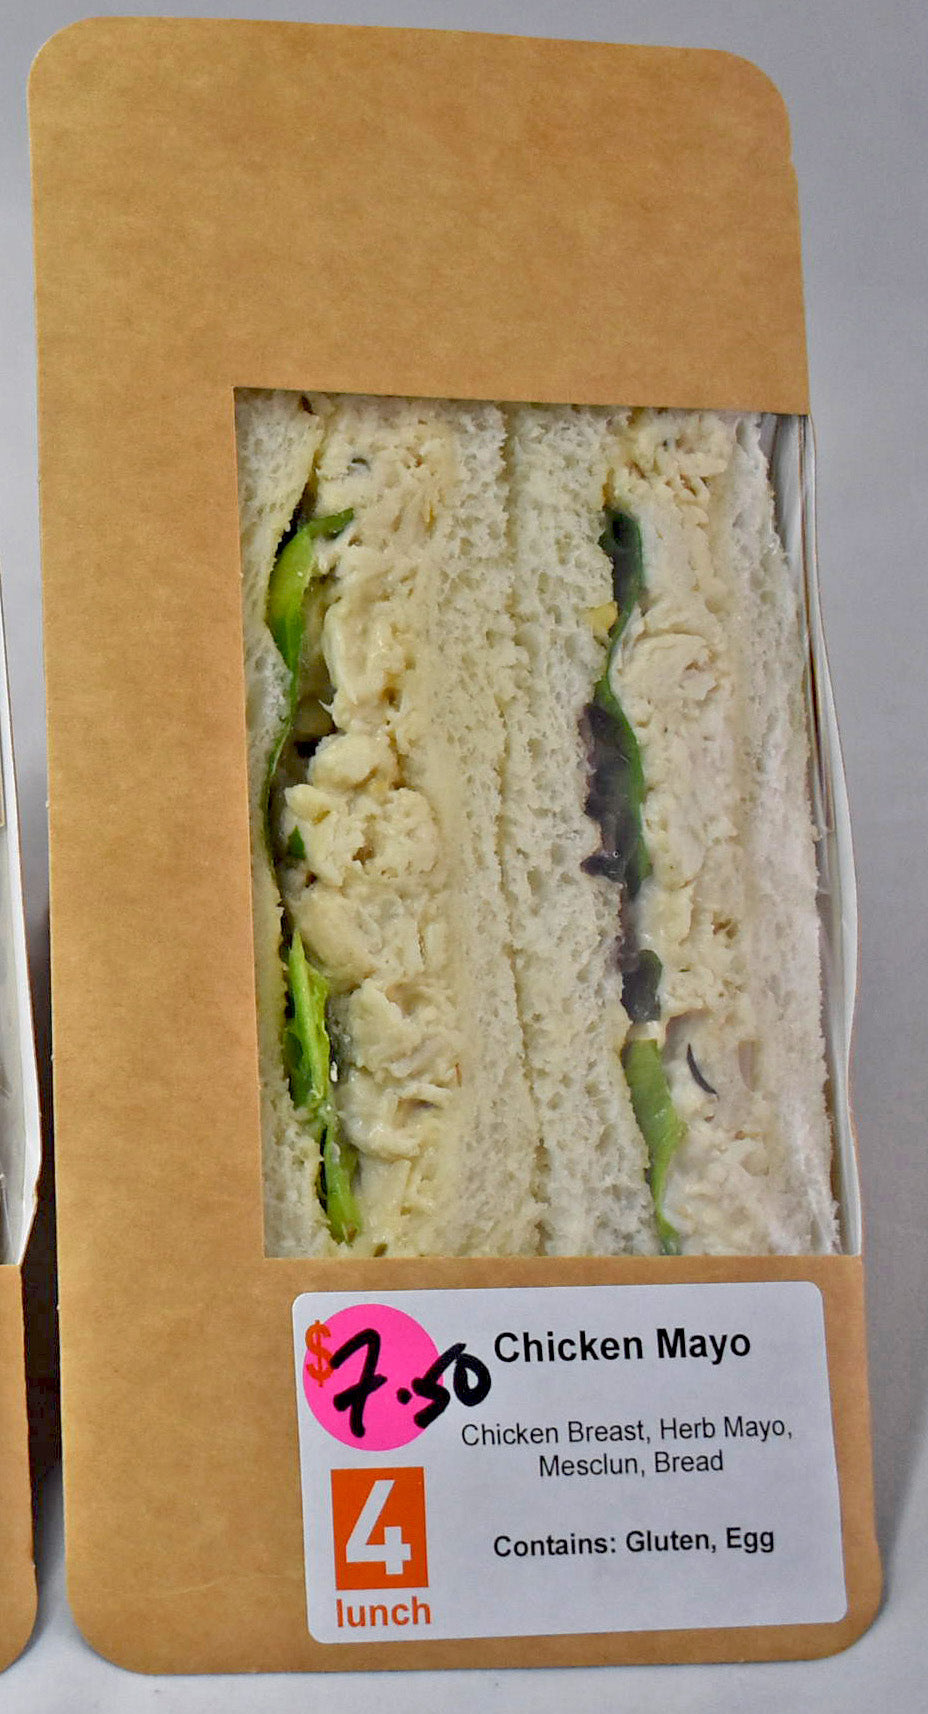 Sandwich wedge - Chicken Mayo